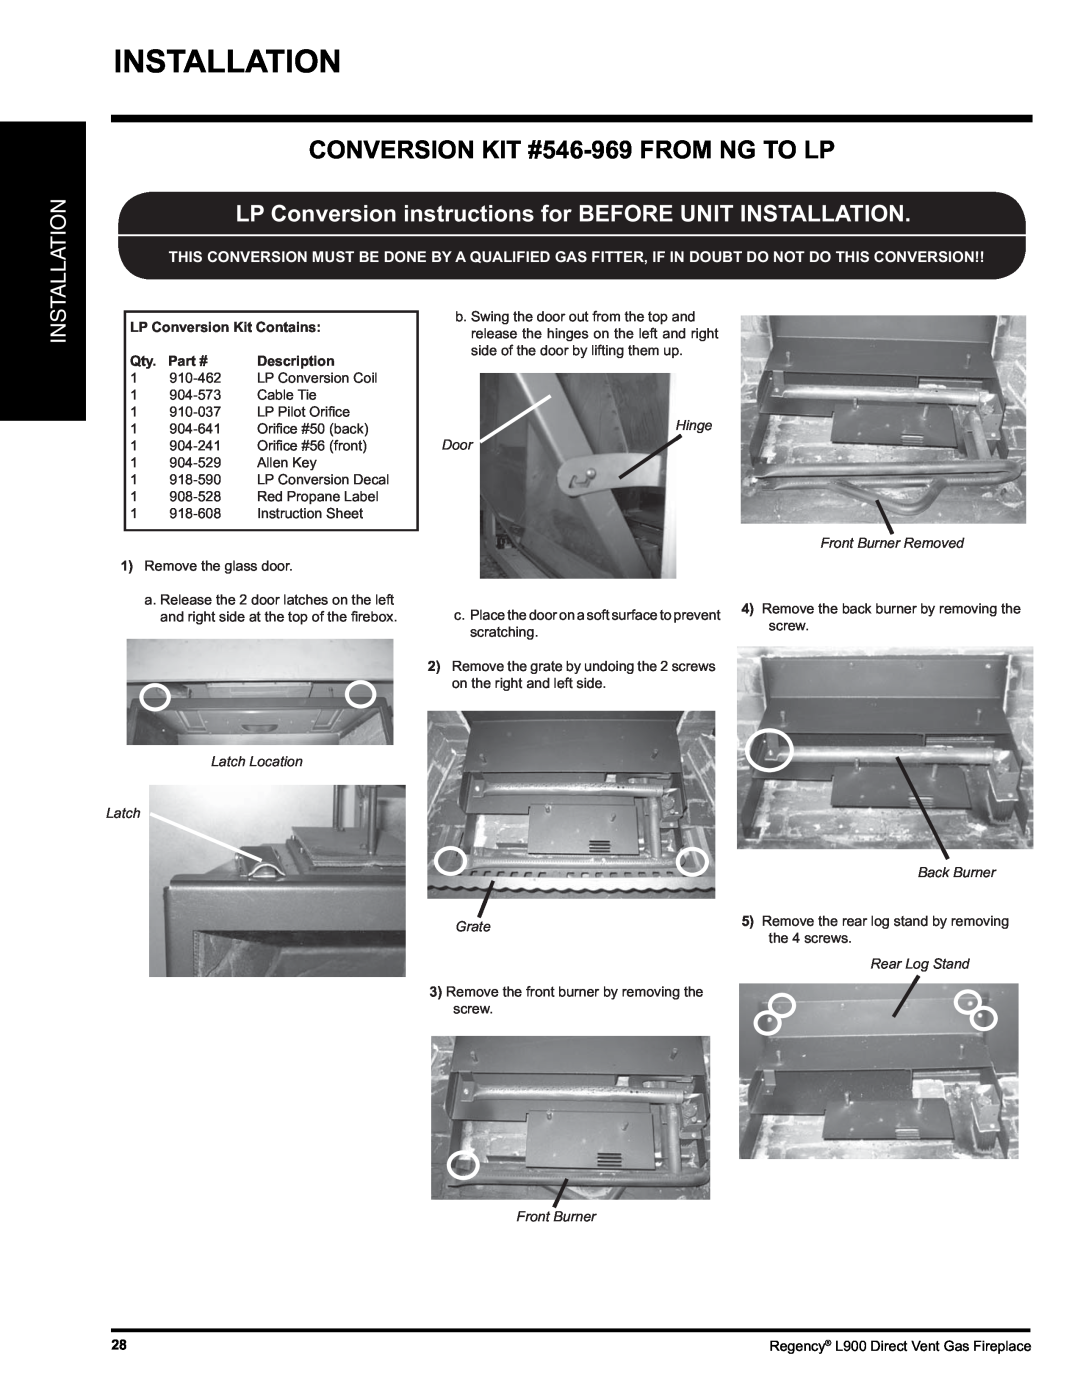 Regency L900-LP Installation, CONVERSION KIT #546-969FROM NG TO LP, LP Conversion Kit Contains, Part #, Description 